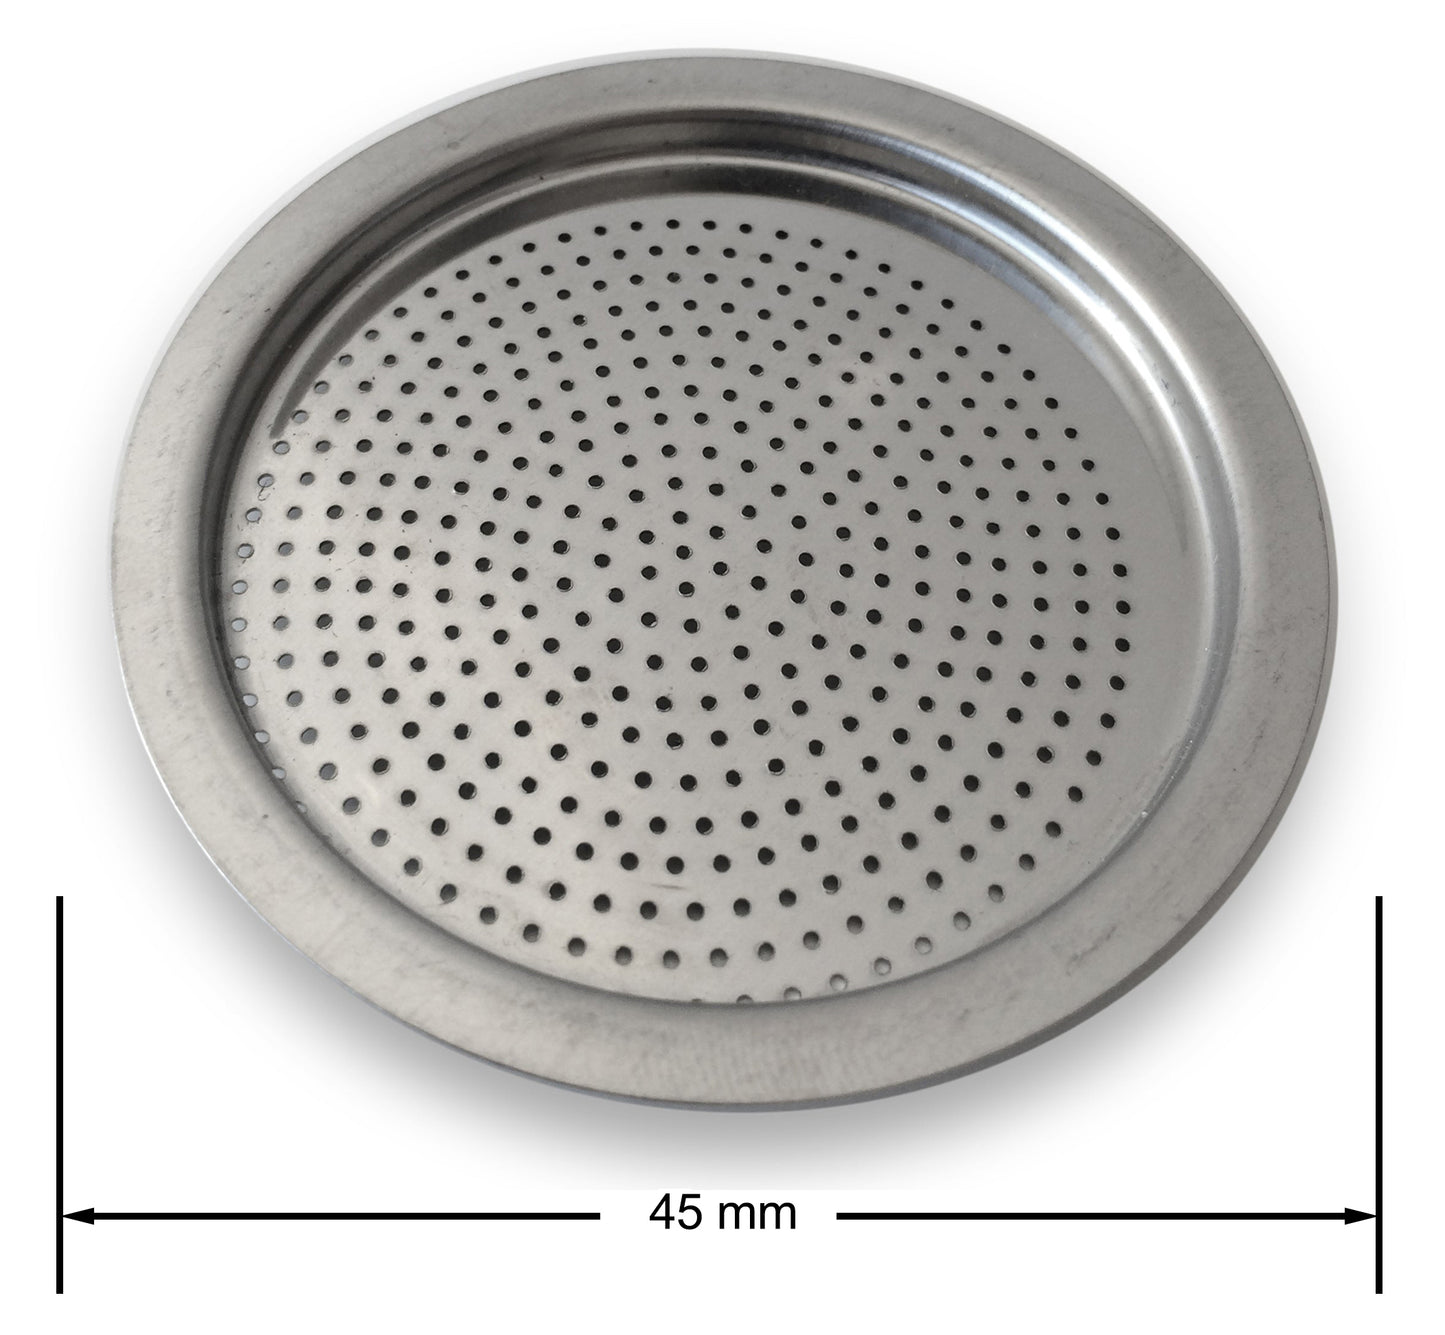 Disque filtrant en aluminium pour machines à expresso en aluminium tailles 1, 2, 3, 6, 9 et 12 tasses